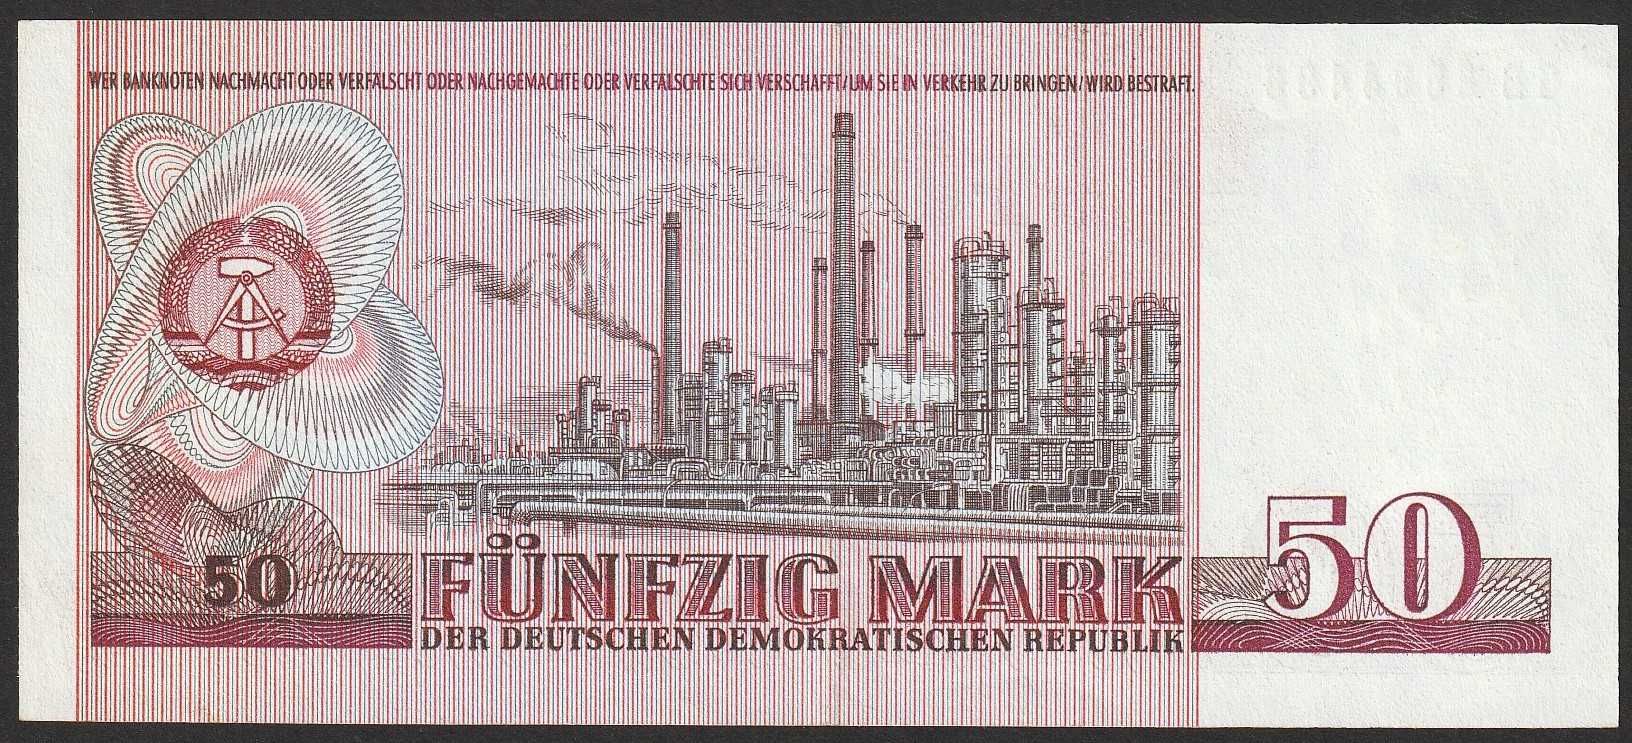 Niemcy NRD 50 marek 1971 - Fryderyk Engels - stan 1/2